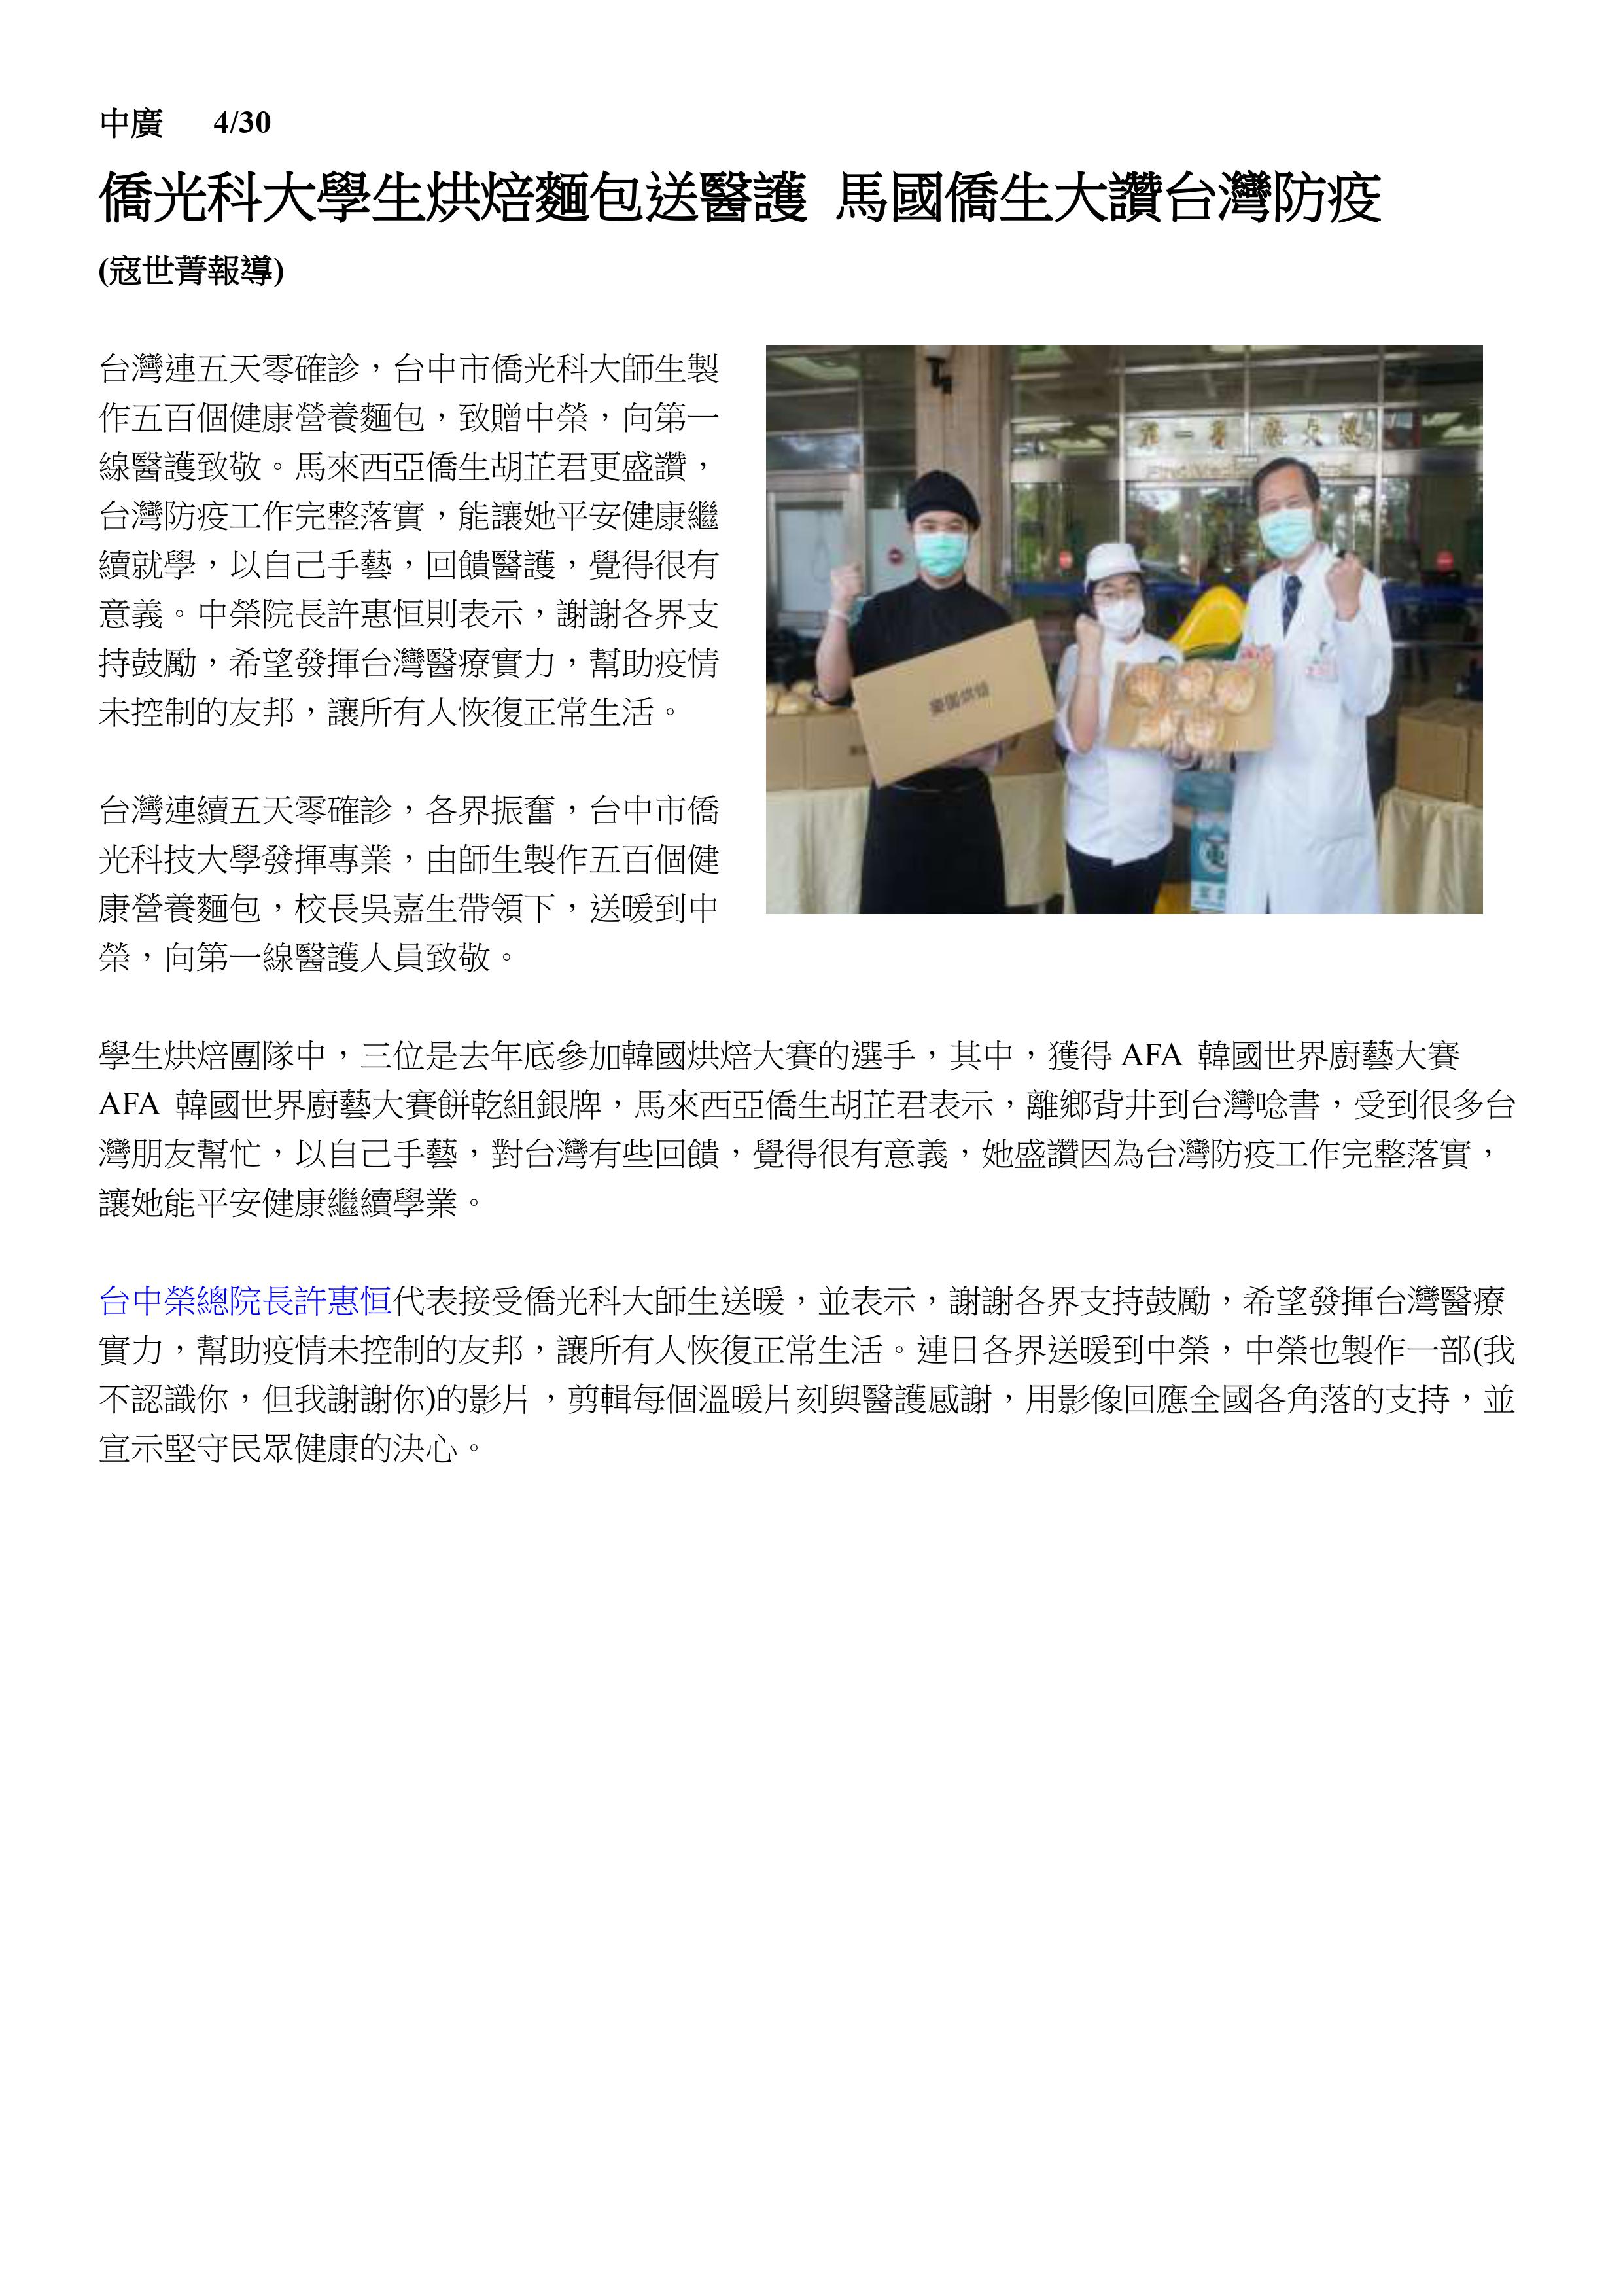 僑光科大學生烘焙麵包送醫護 馬國僑生大讚台灣防疫